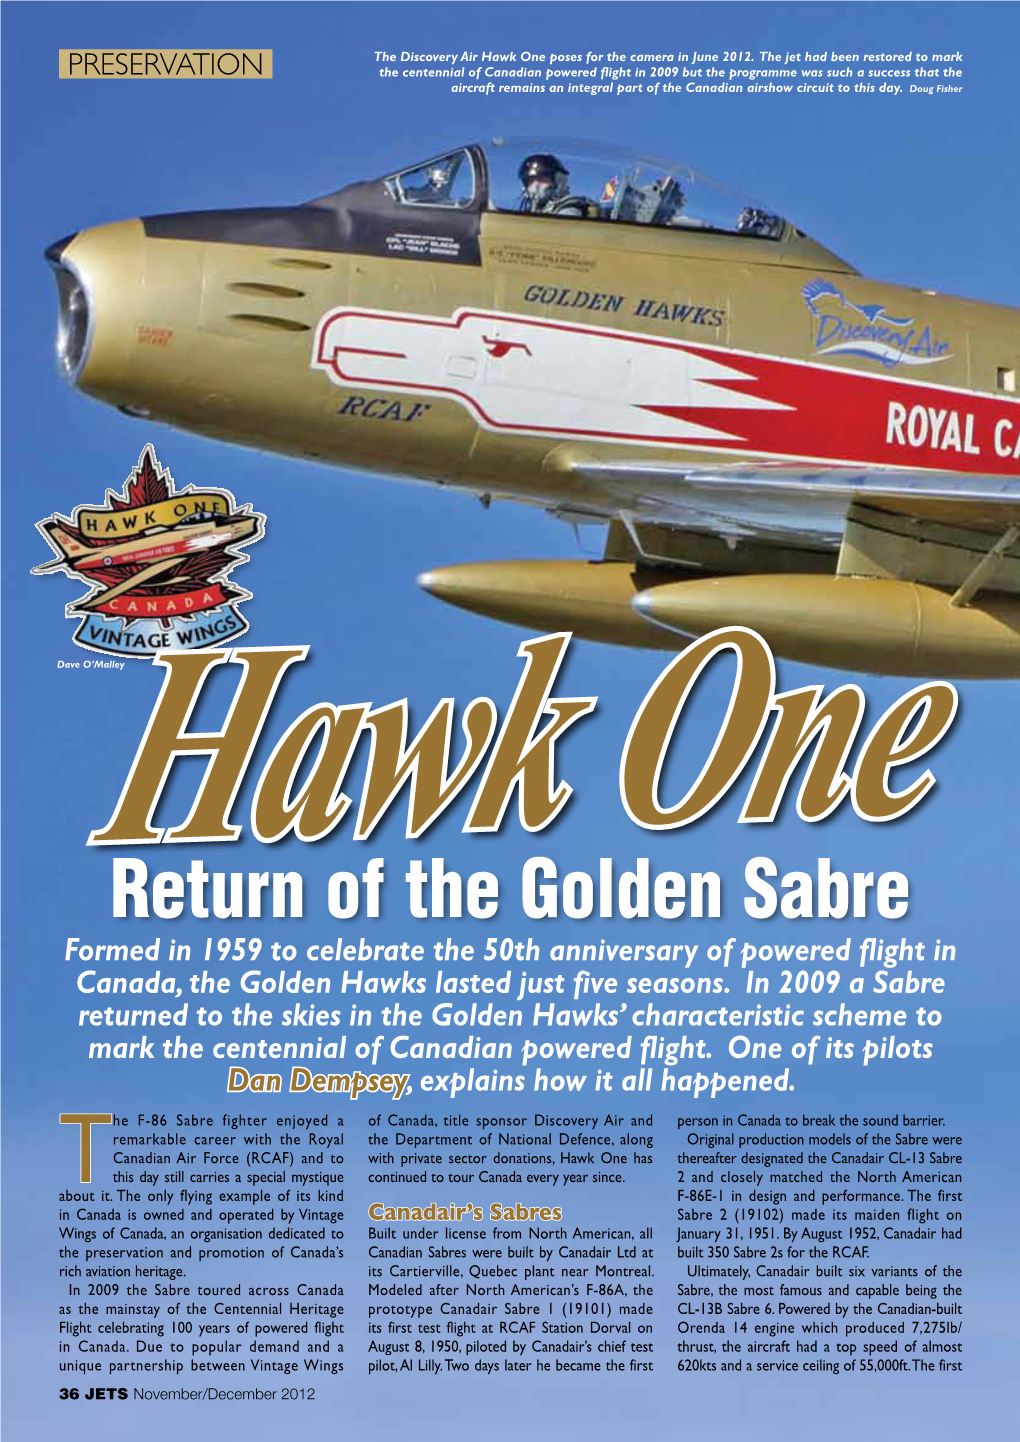 Return of the Golden Sabre